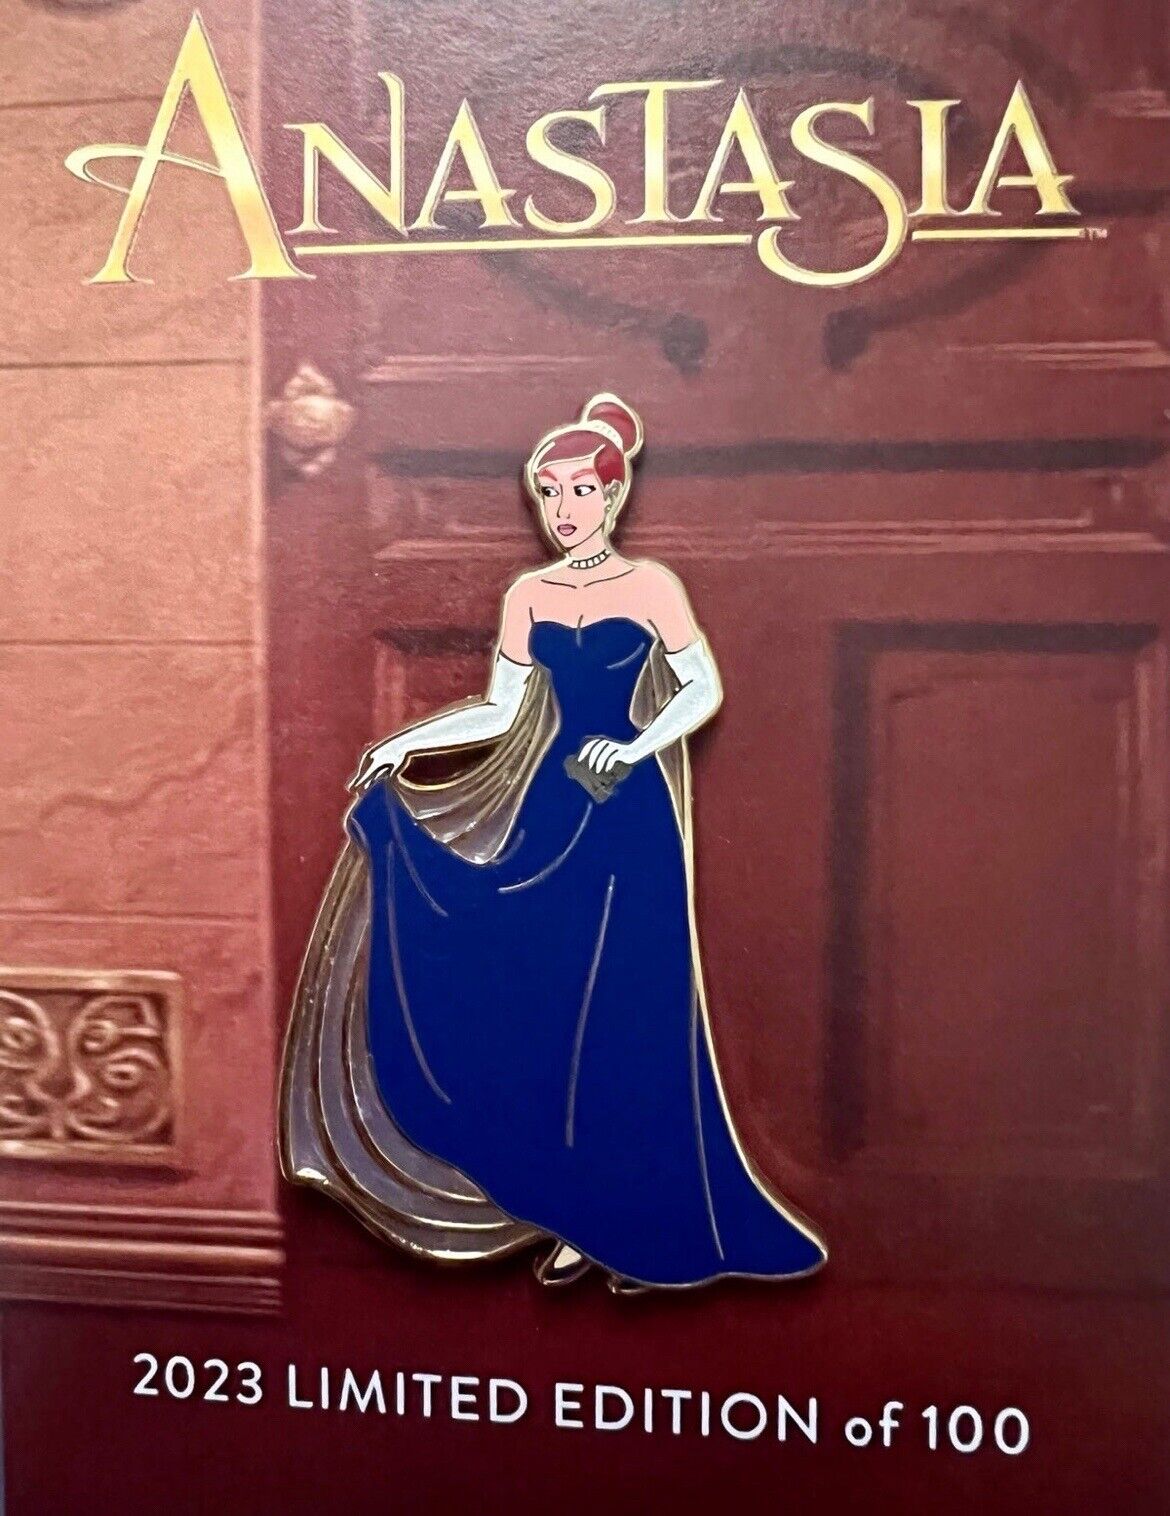 Anastasia Fantasy Pin